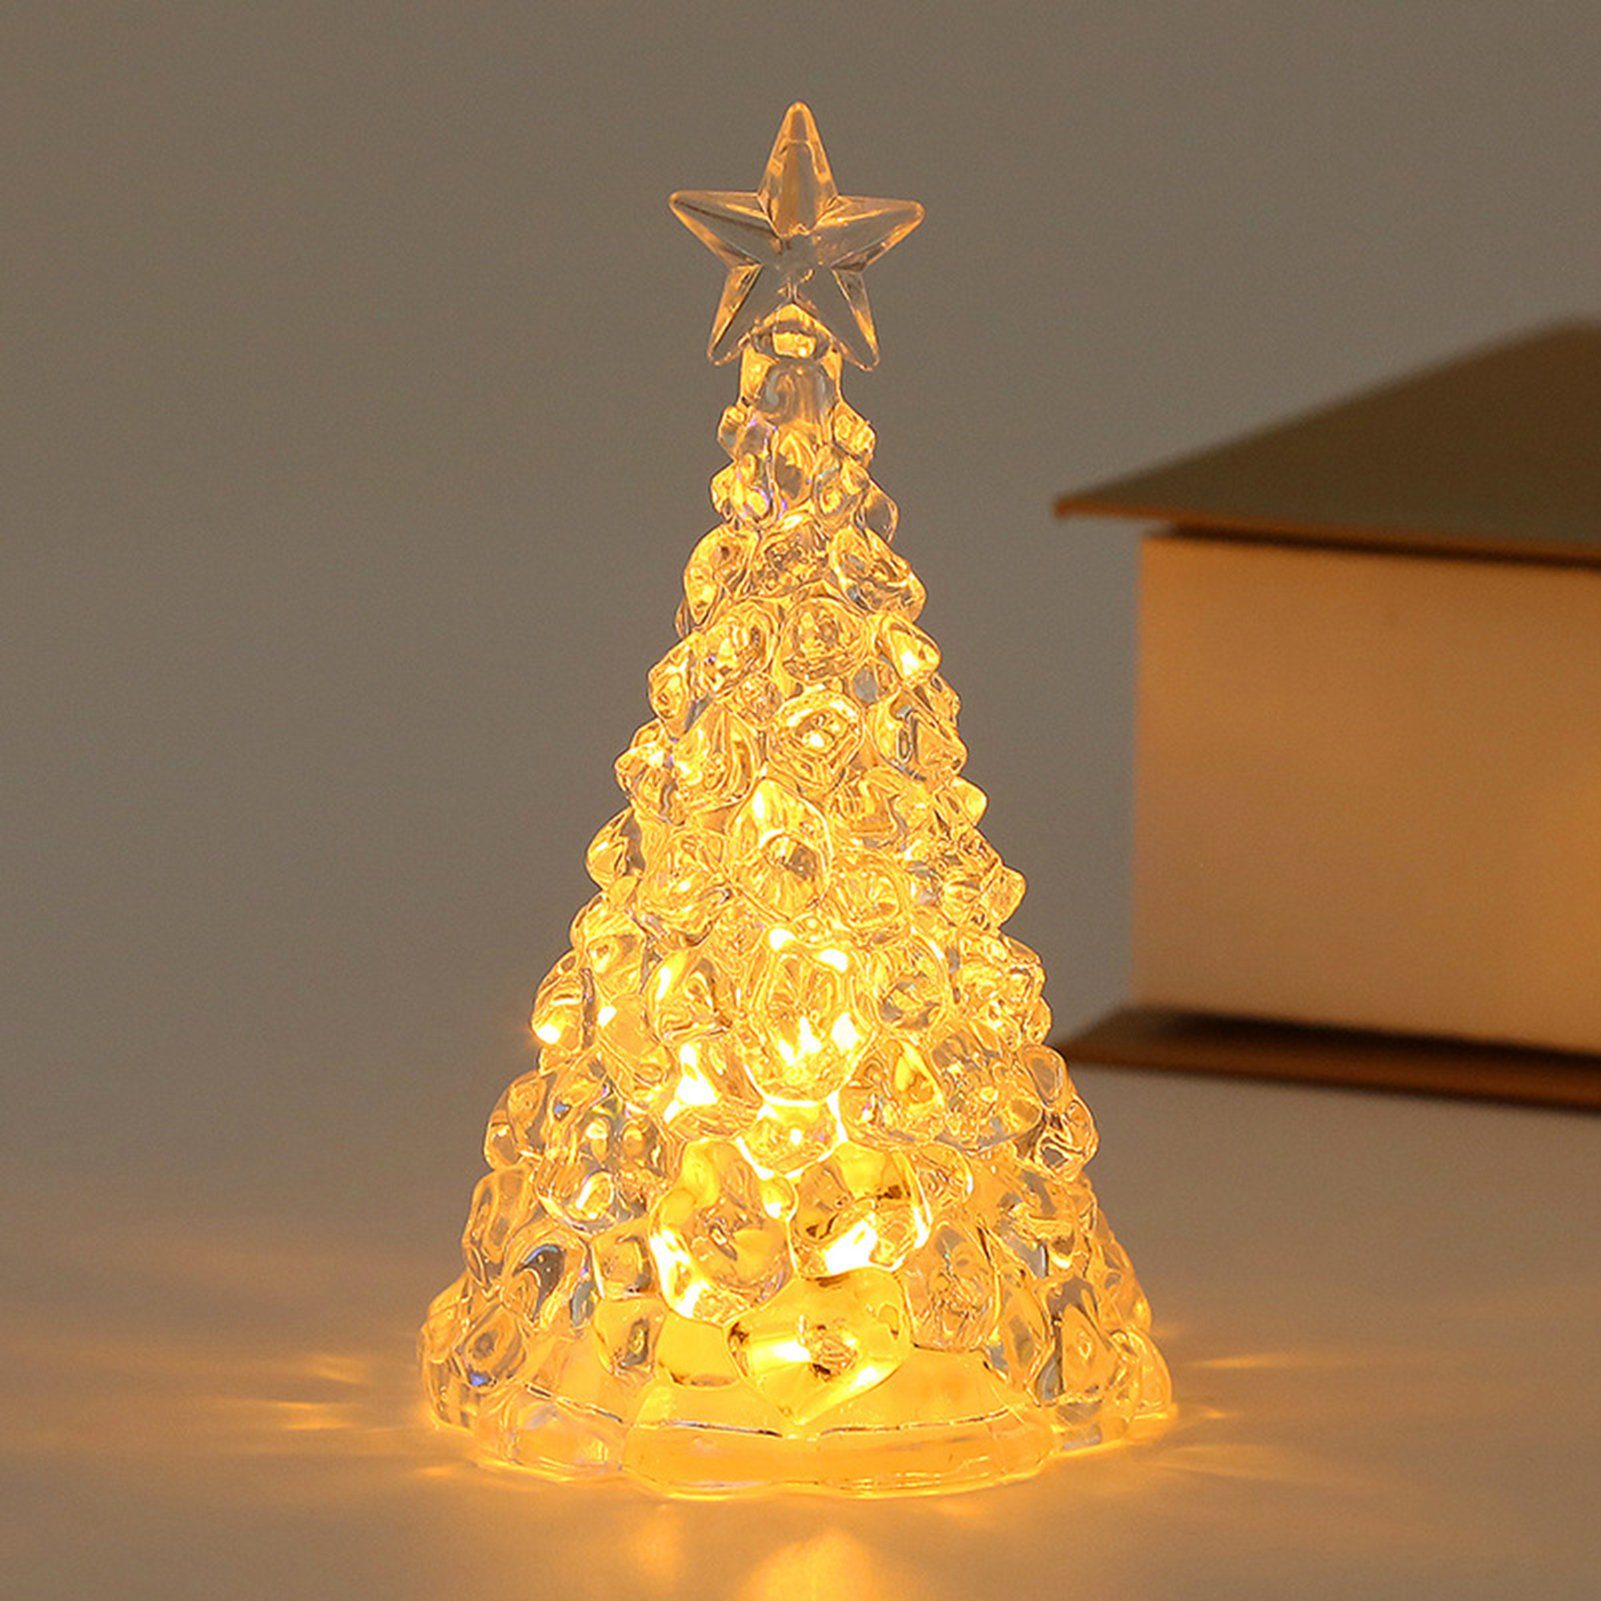 Rutaqian LED Nachtlicht 4 Stück Weihnachtsbaum Nachtlicht Heiligabend Geschenk LED Kerzenlicht, Weihnachtsdekorationen Desktop Ornament Kristall Nachtlicht Gold